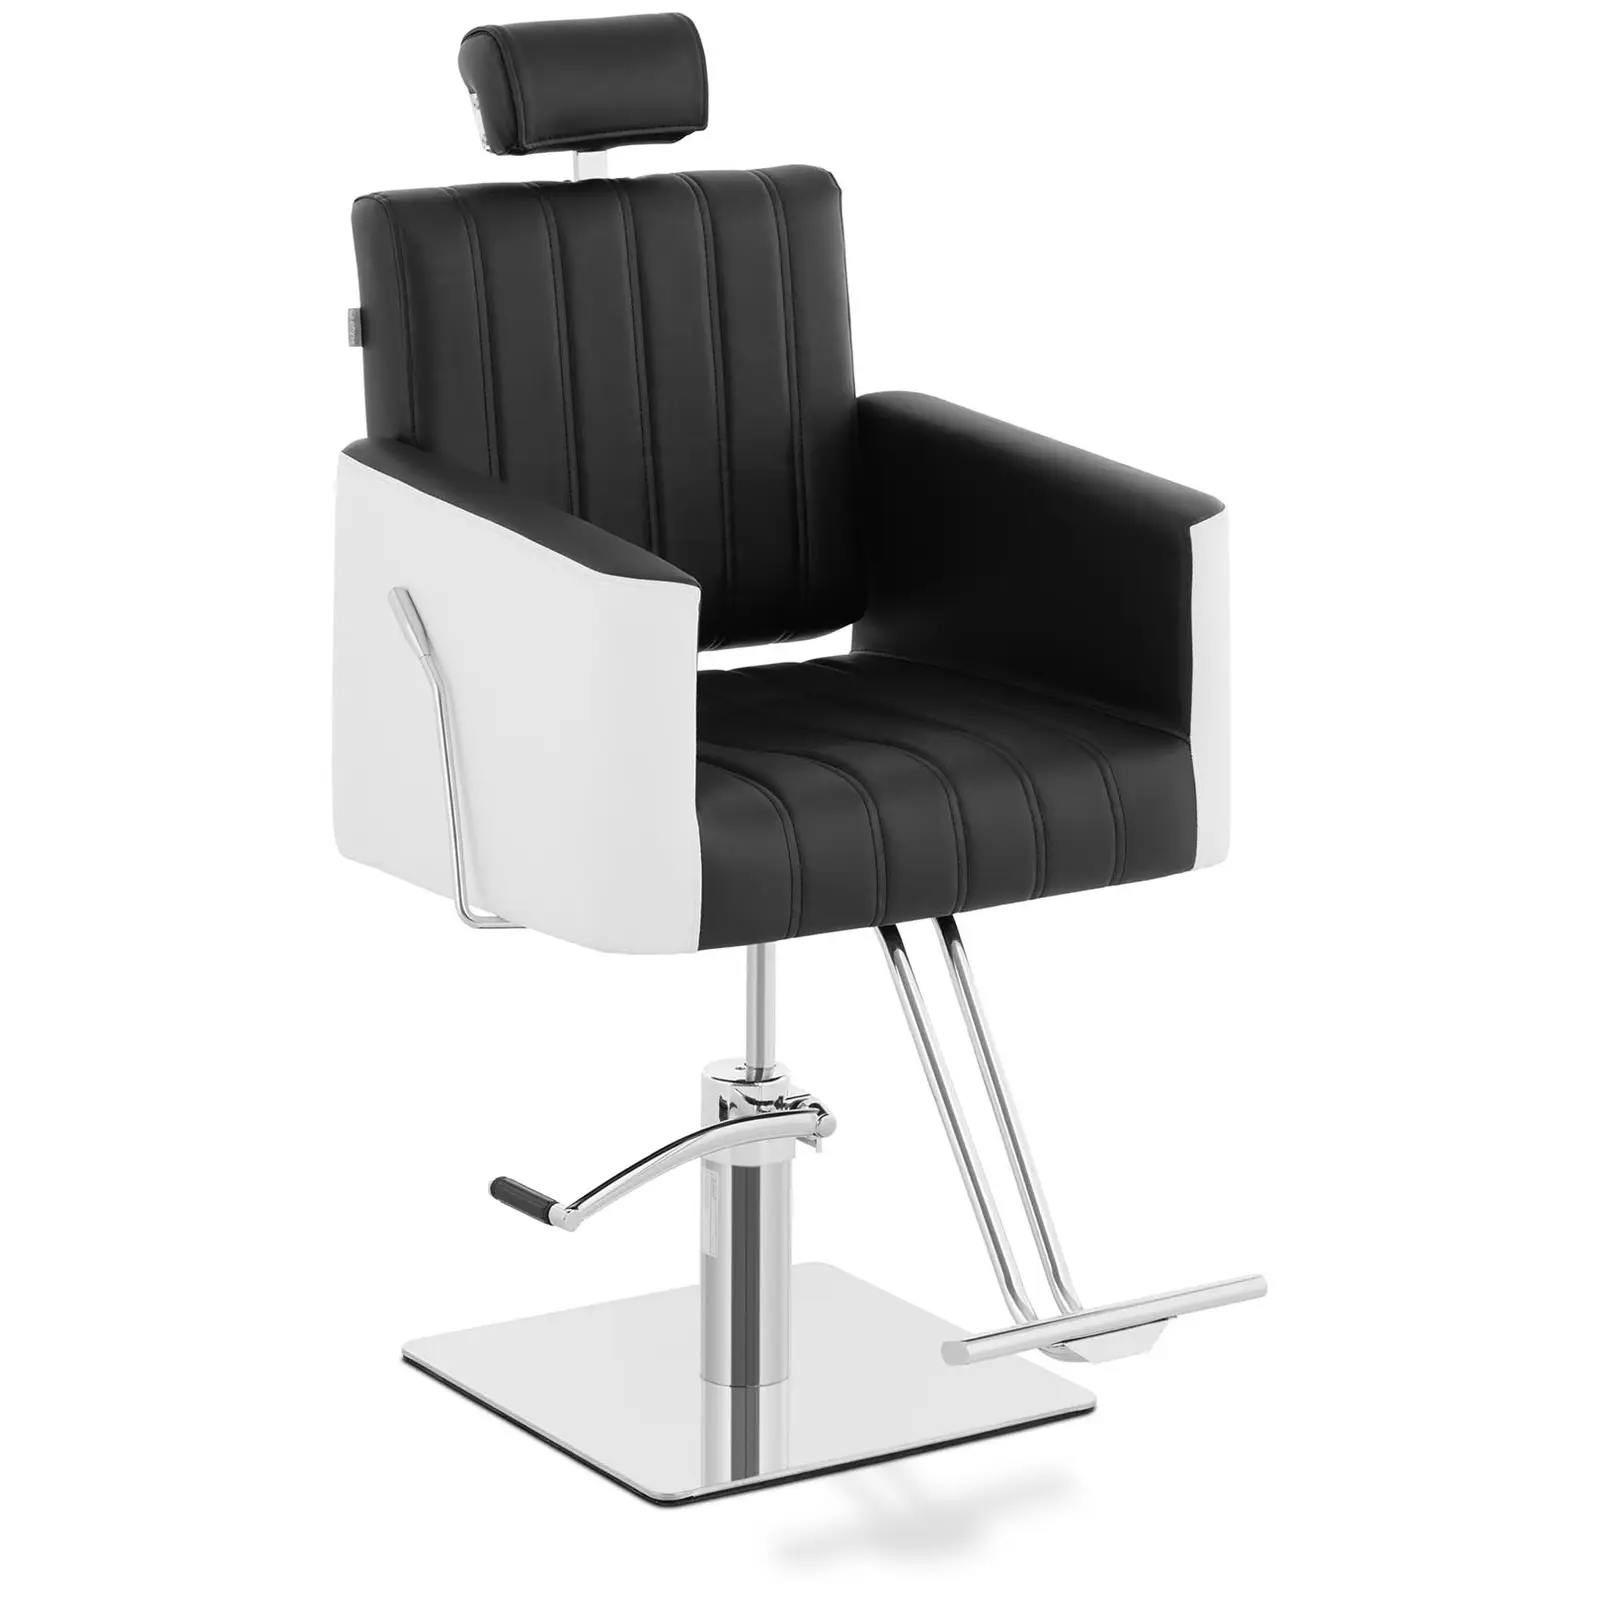 Salonski stol z naslonom za noge - 470 x 630 mm - 150 kg - črna, bela